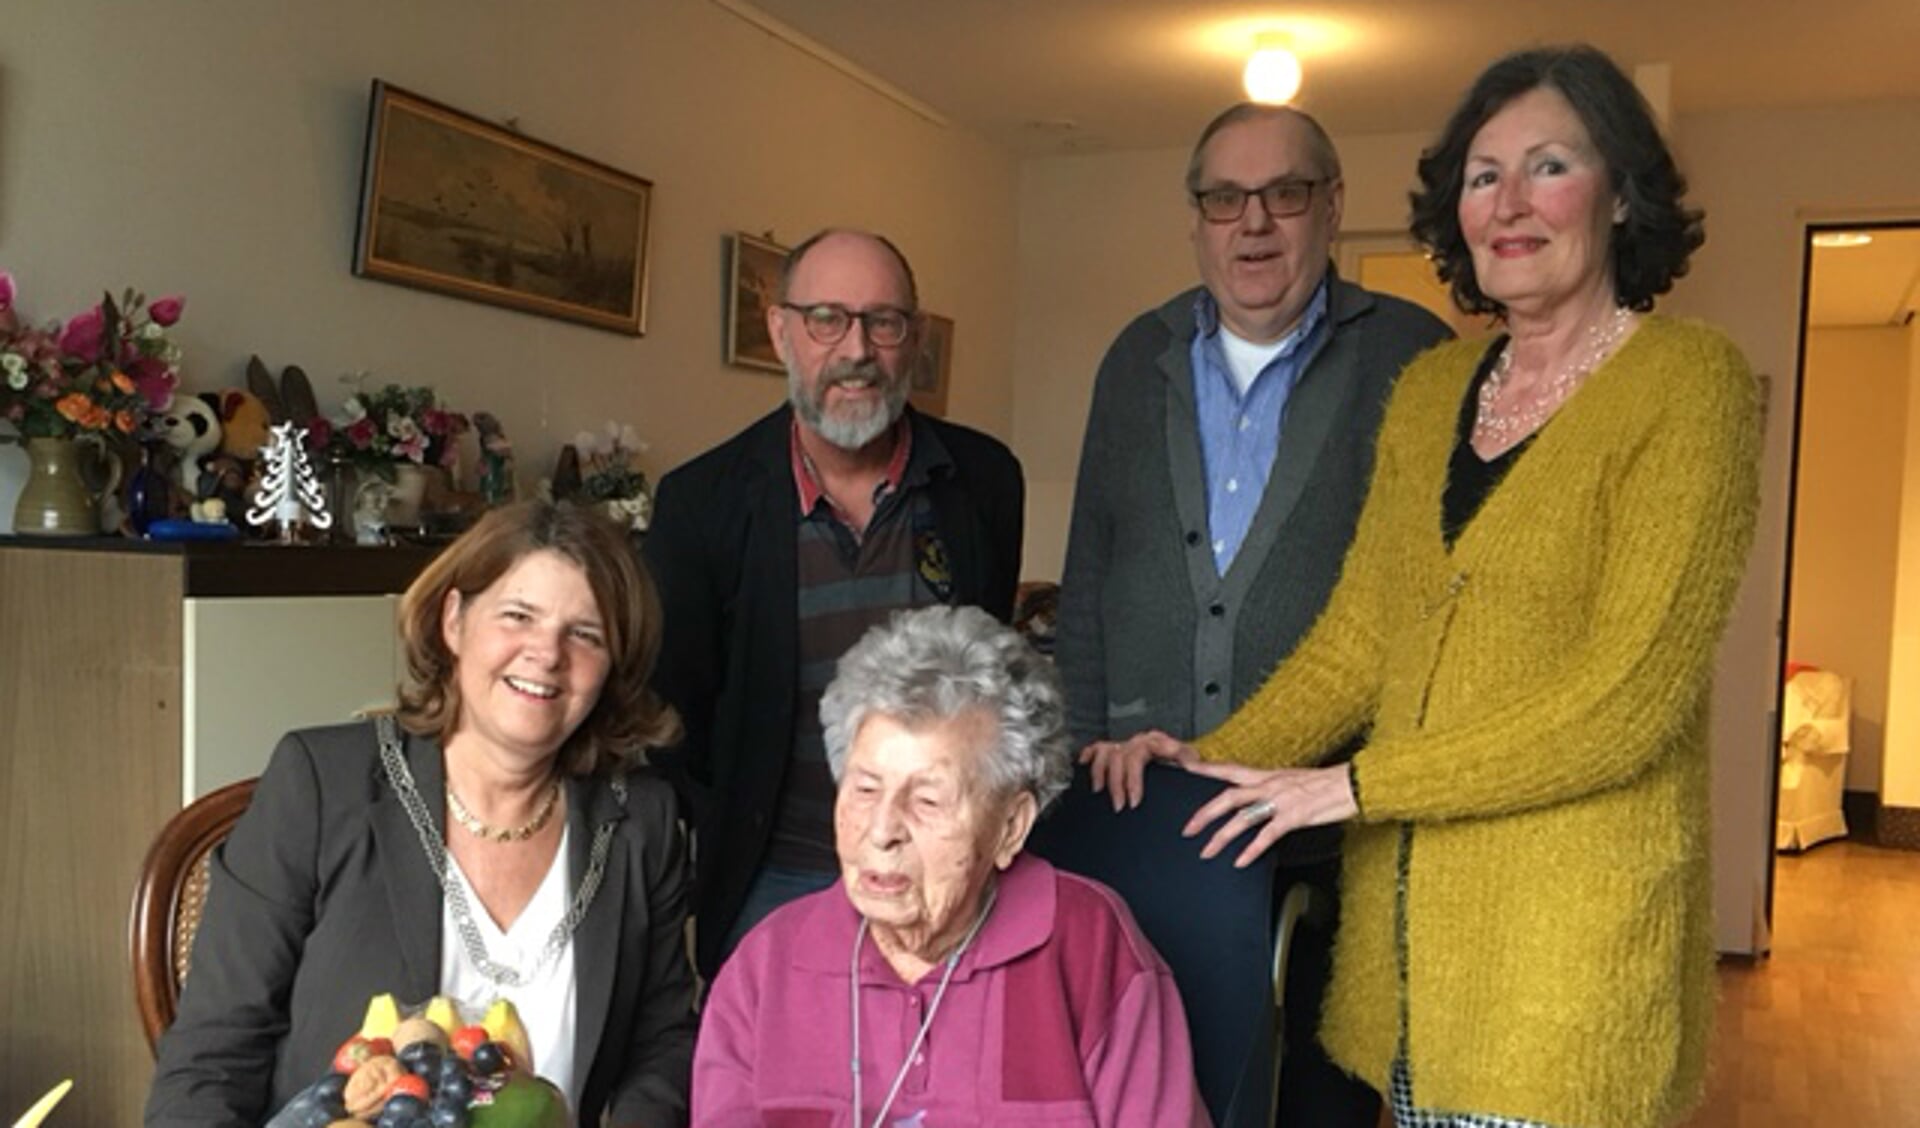 Op 31 januari vierde mevrouw Van der Steen haar 101e verjaardag. Burgemeester Van Bijsterveldt feliciteerde haar daarmee.